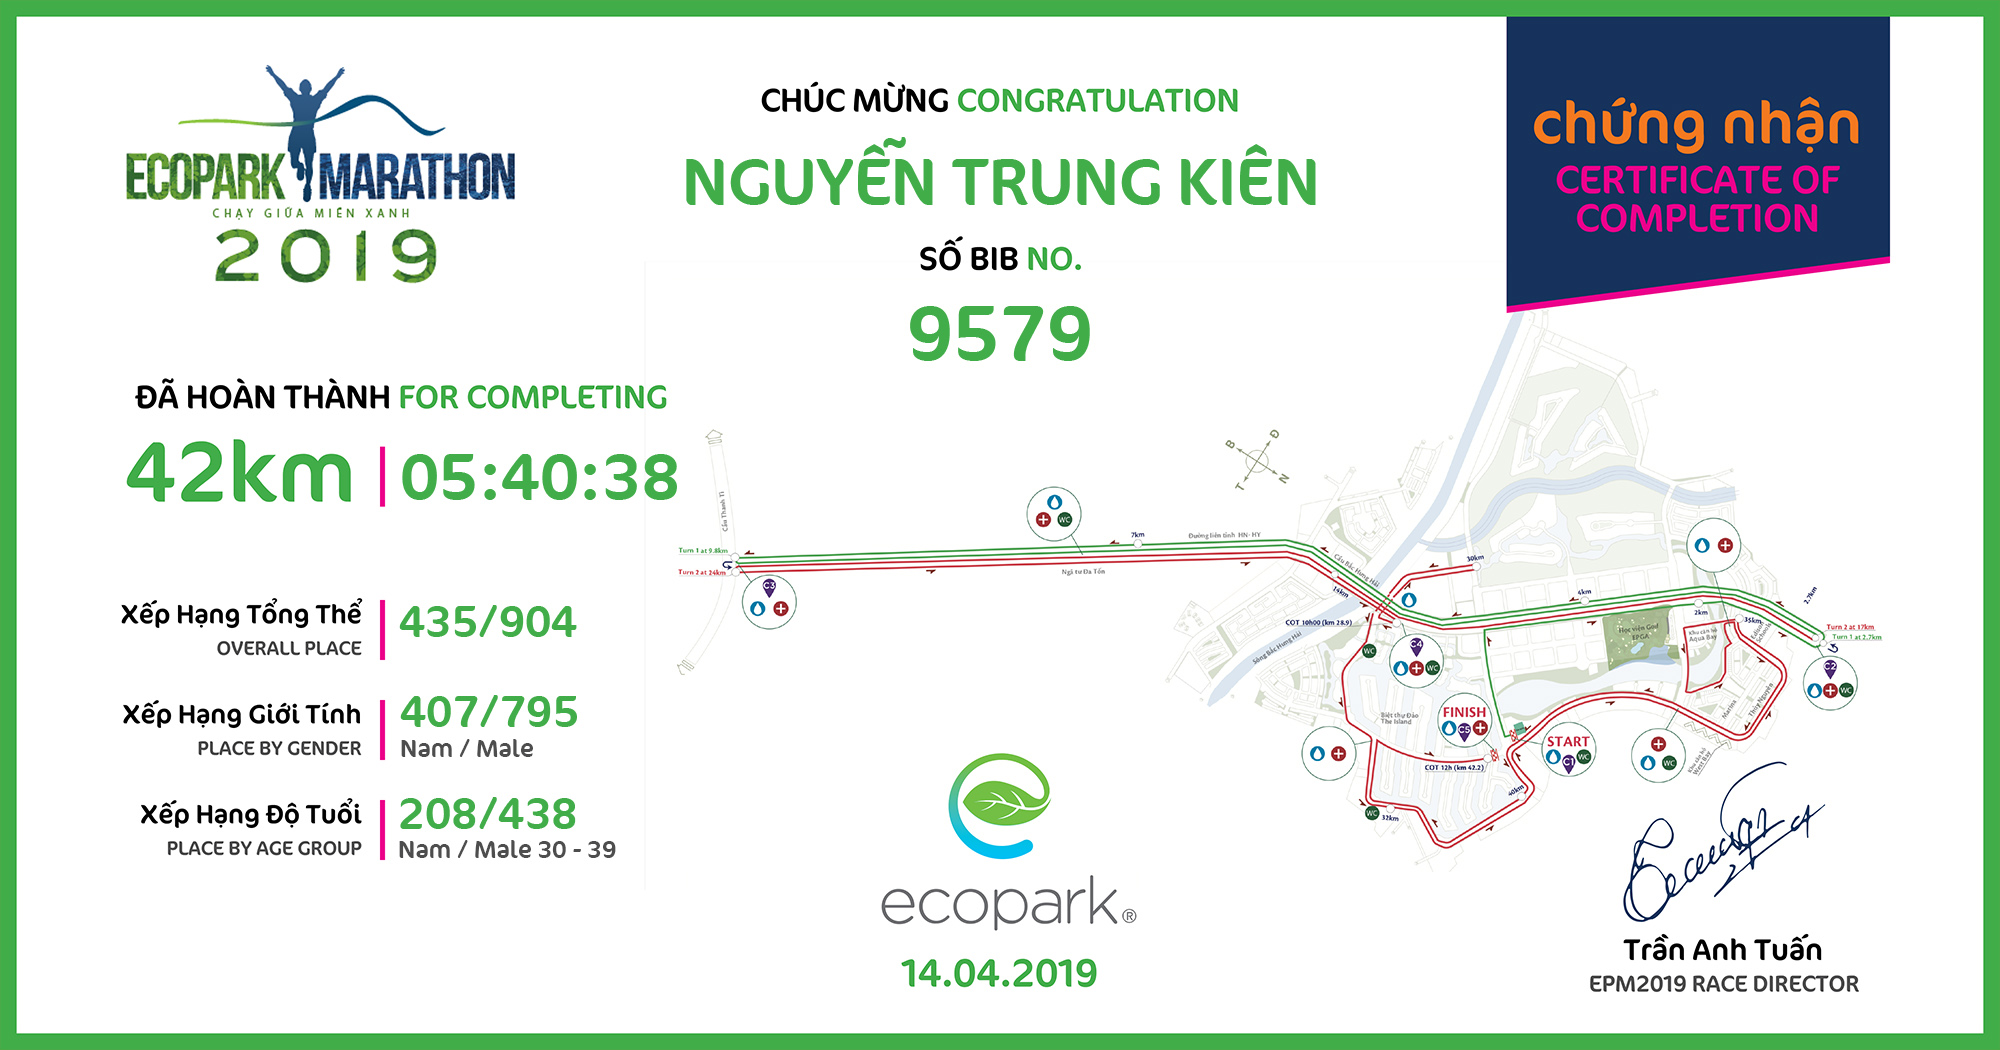 9579 - Nguyễn Trung Kiên